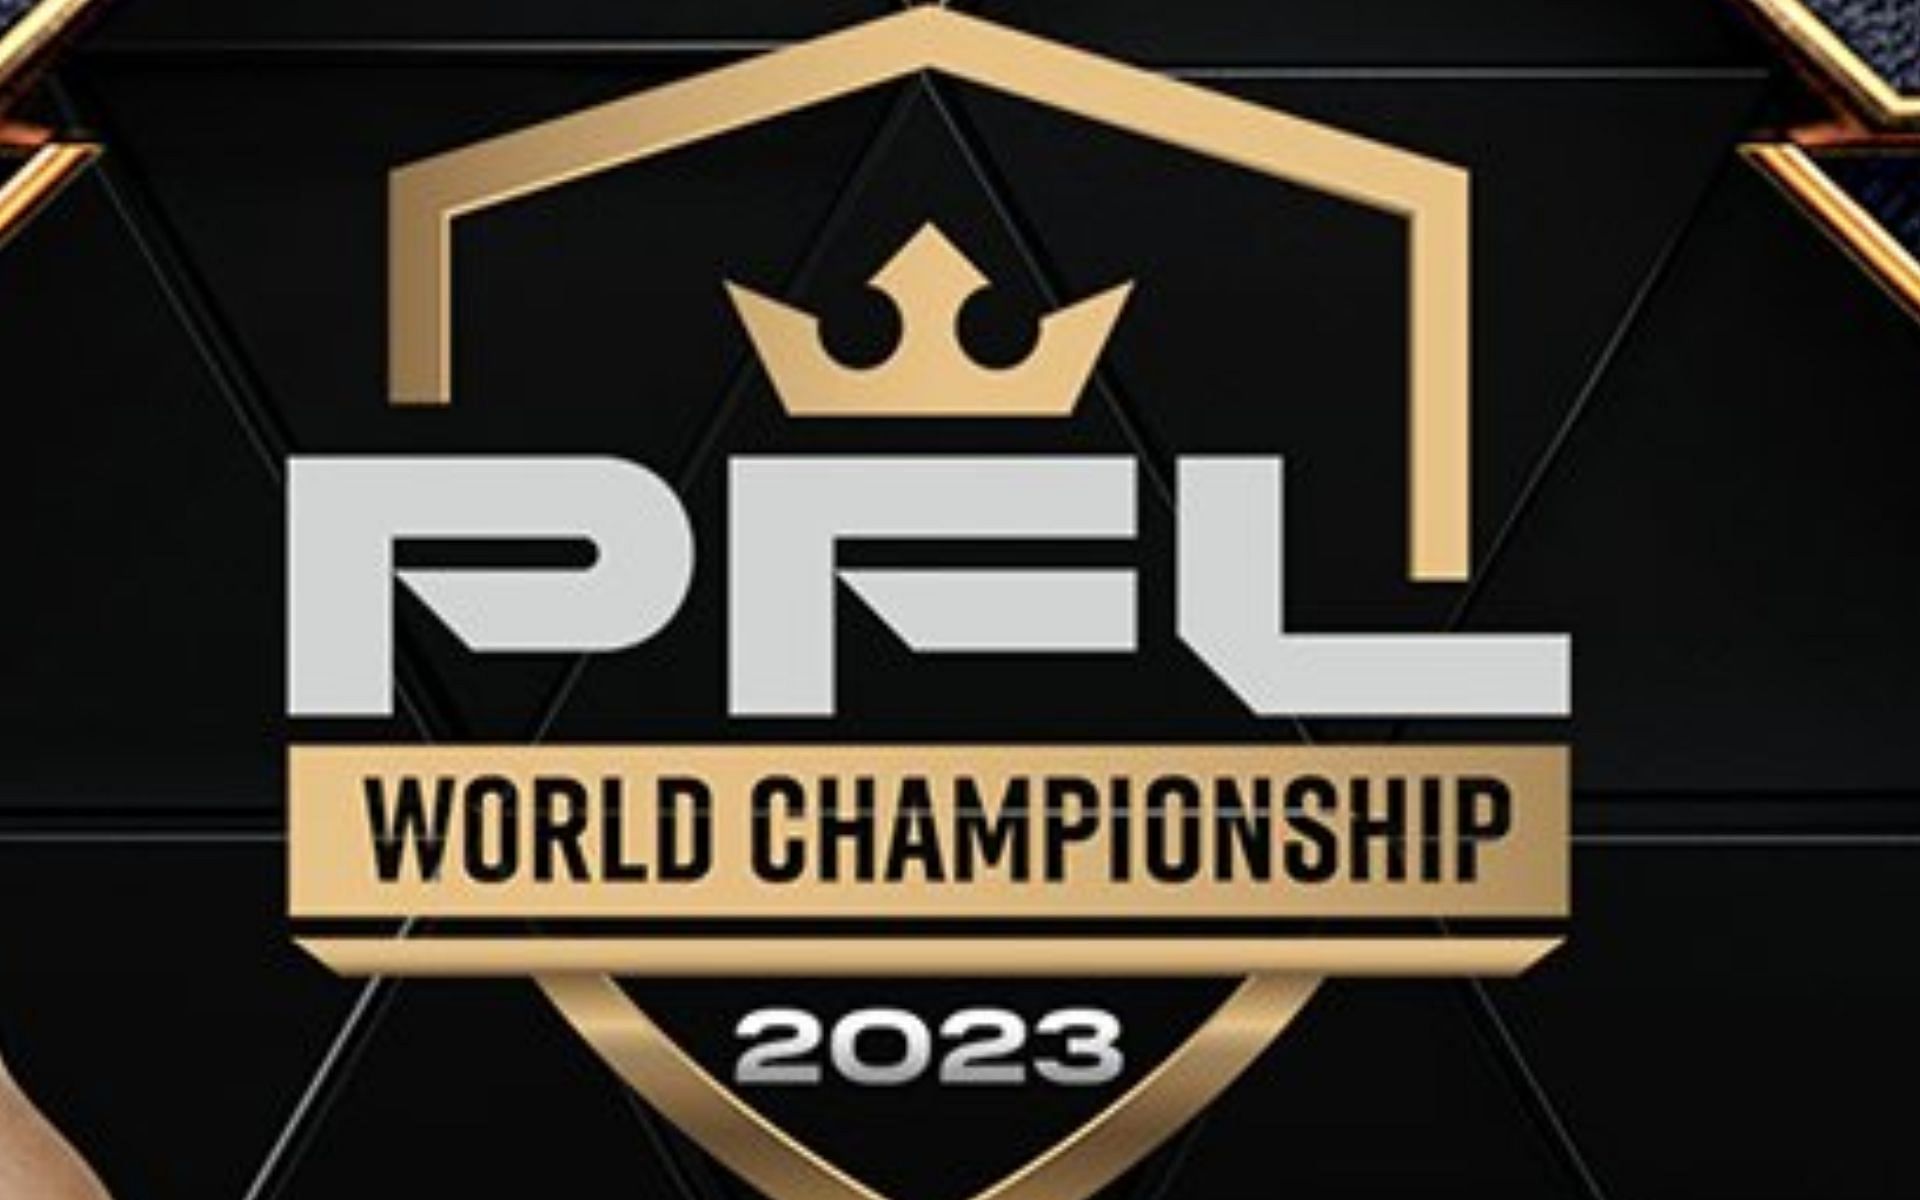 2023 PFL World Championship: 2023 PFL World Championship event